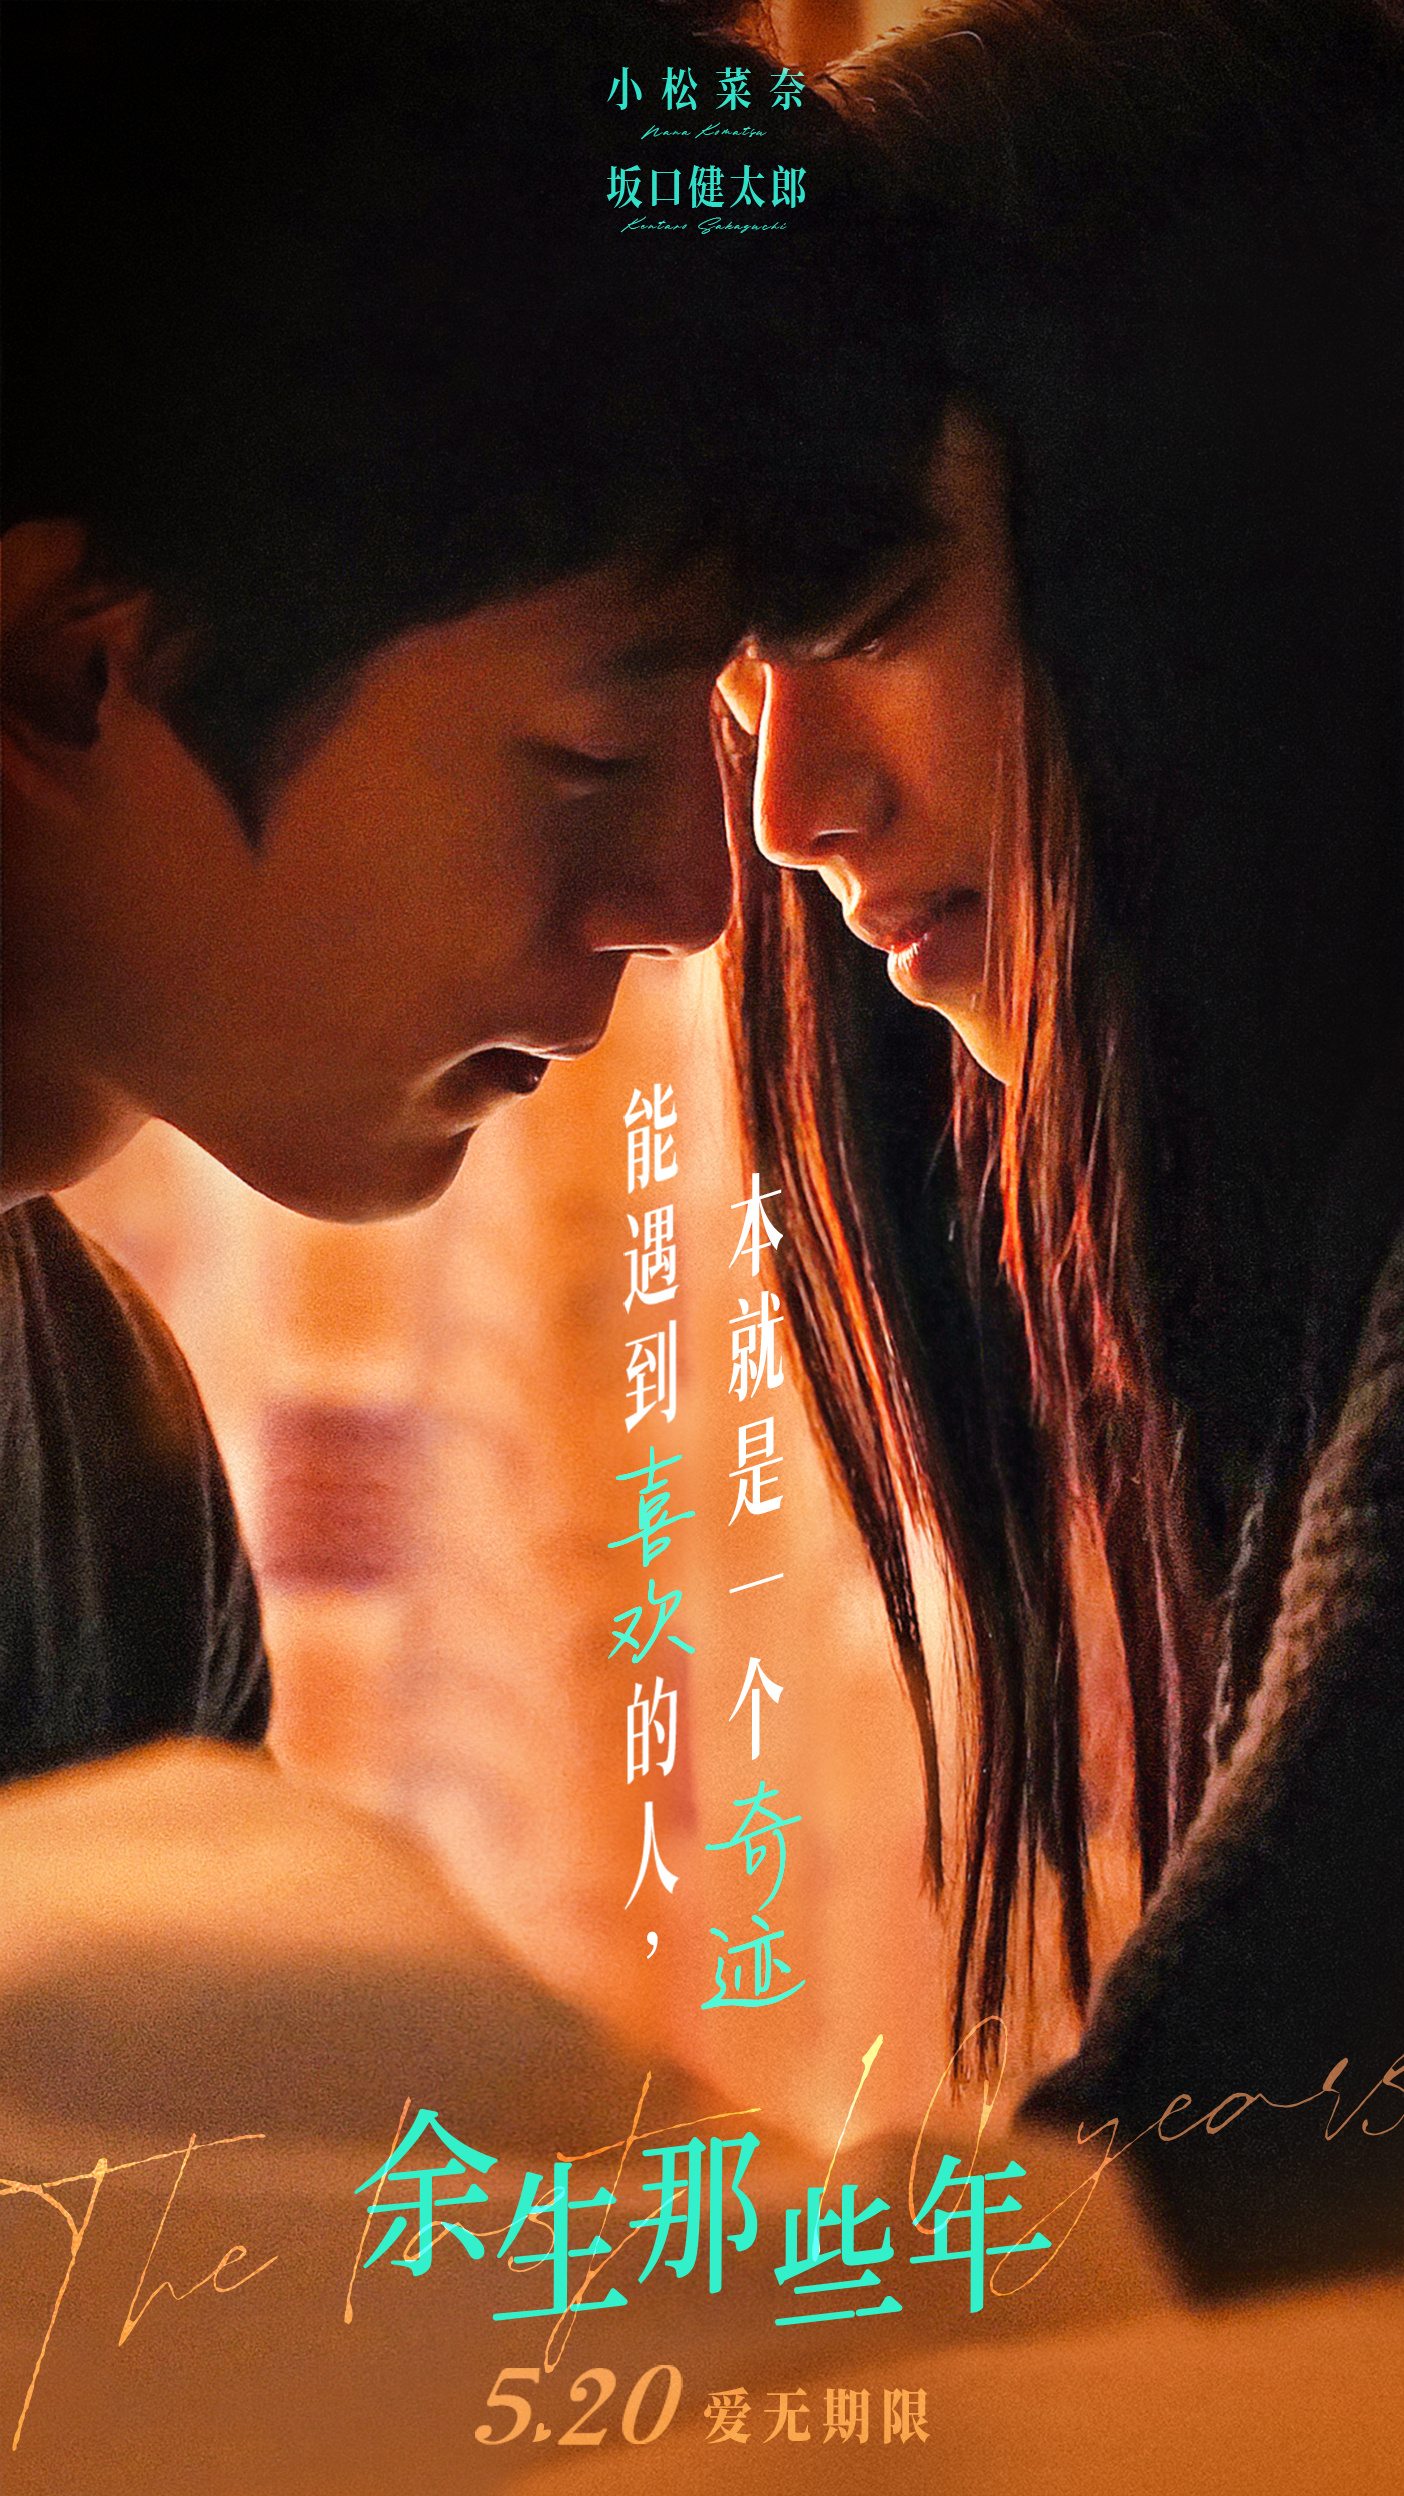 日本爱情电影《余生那些年》曝海报 浪漫氛围拉满